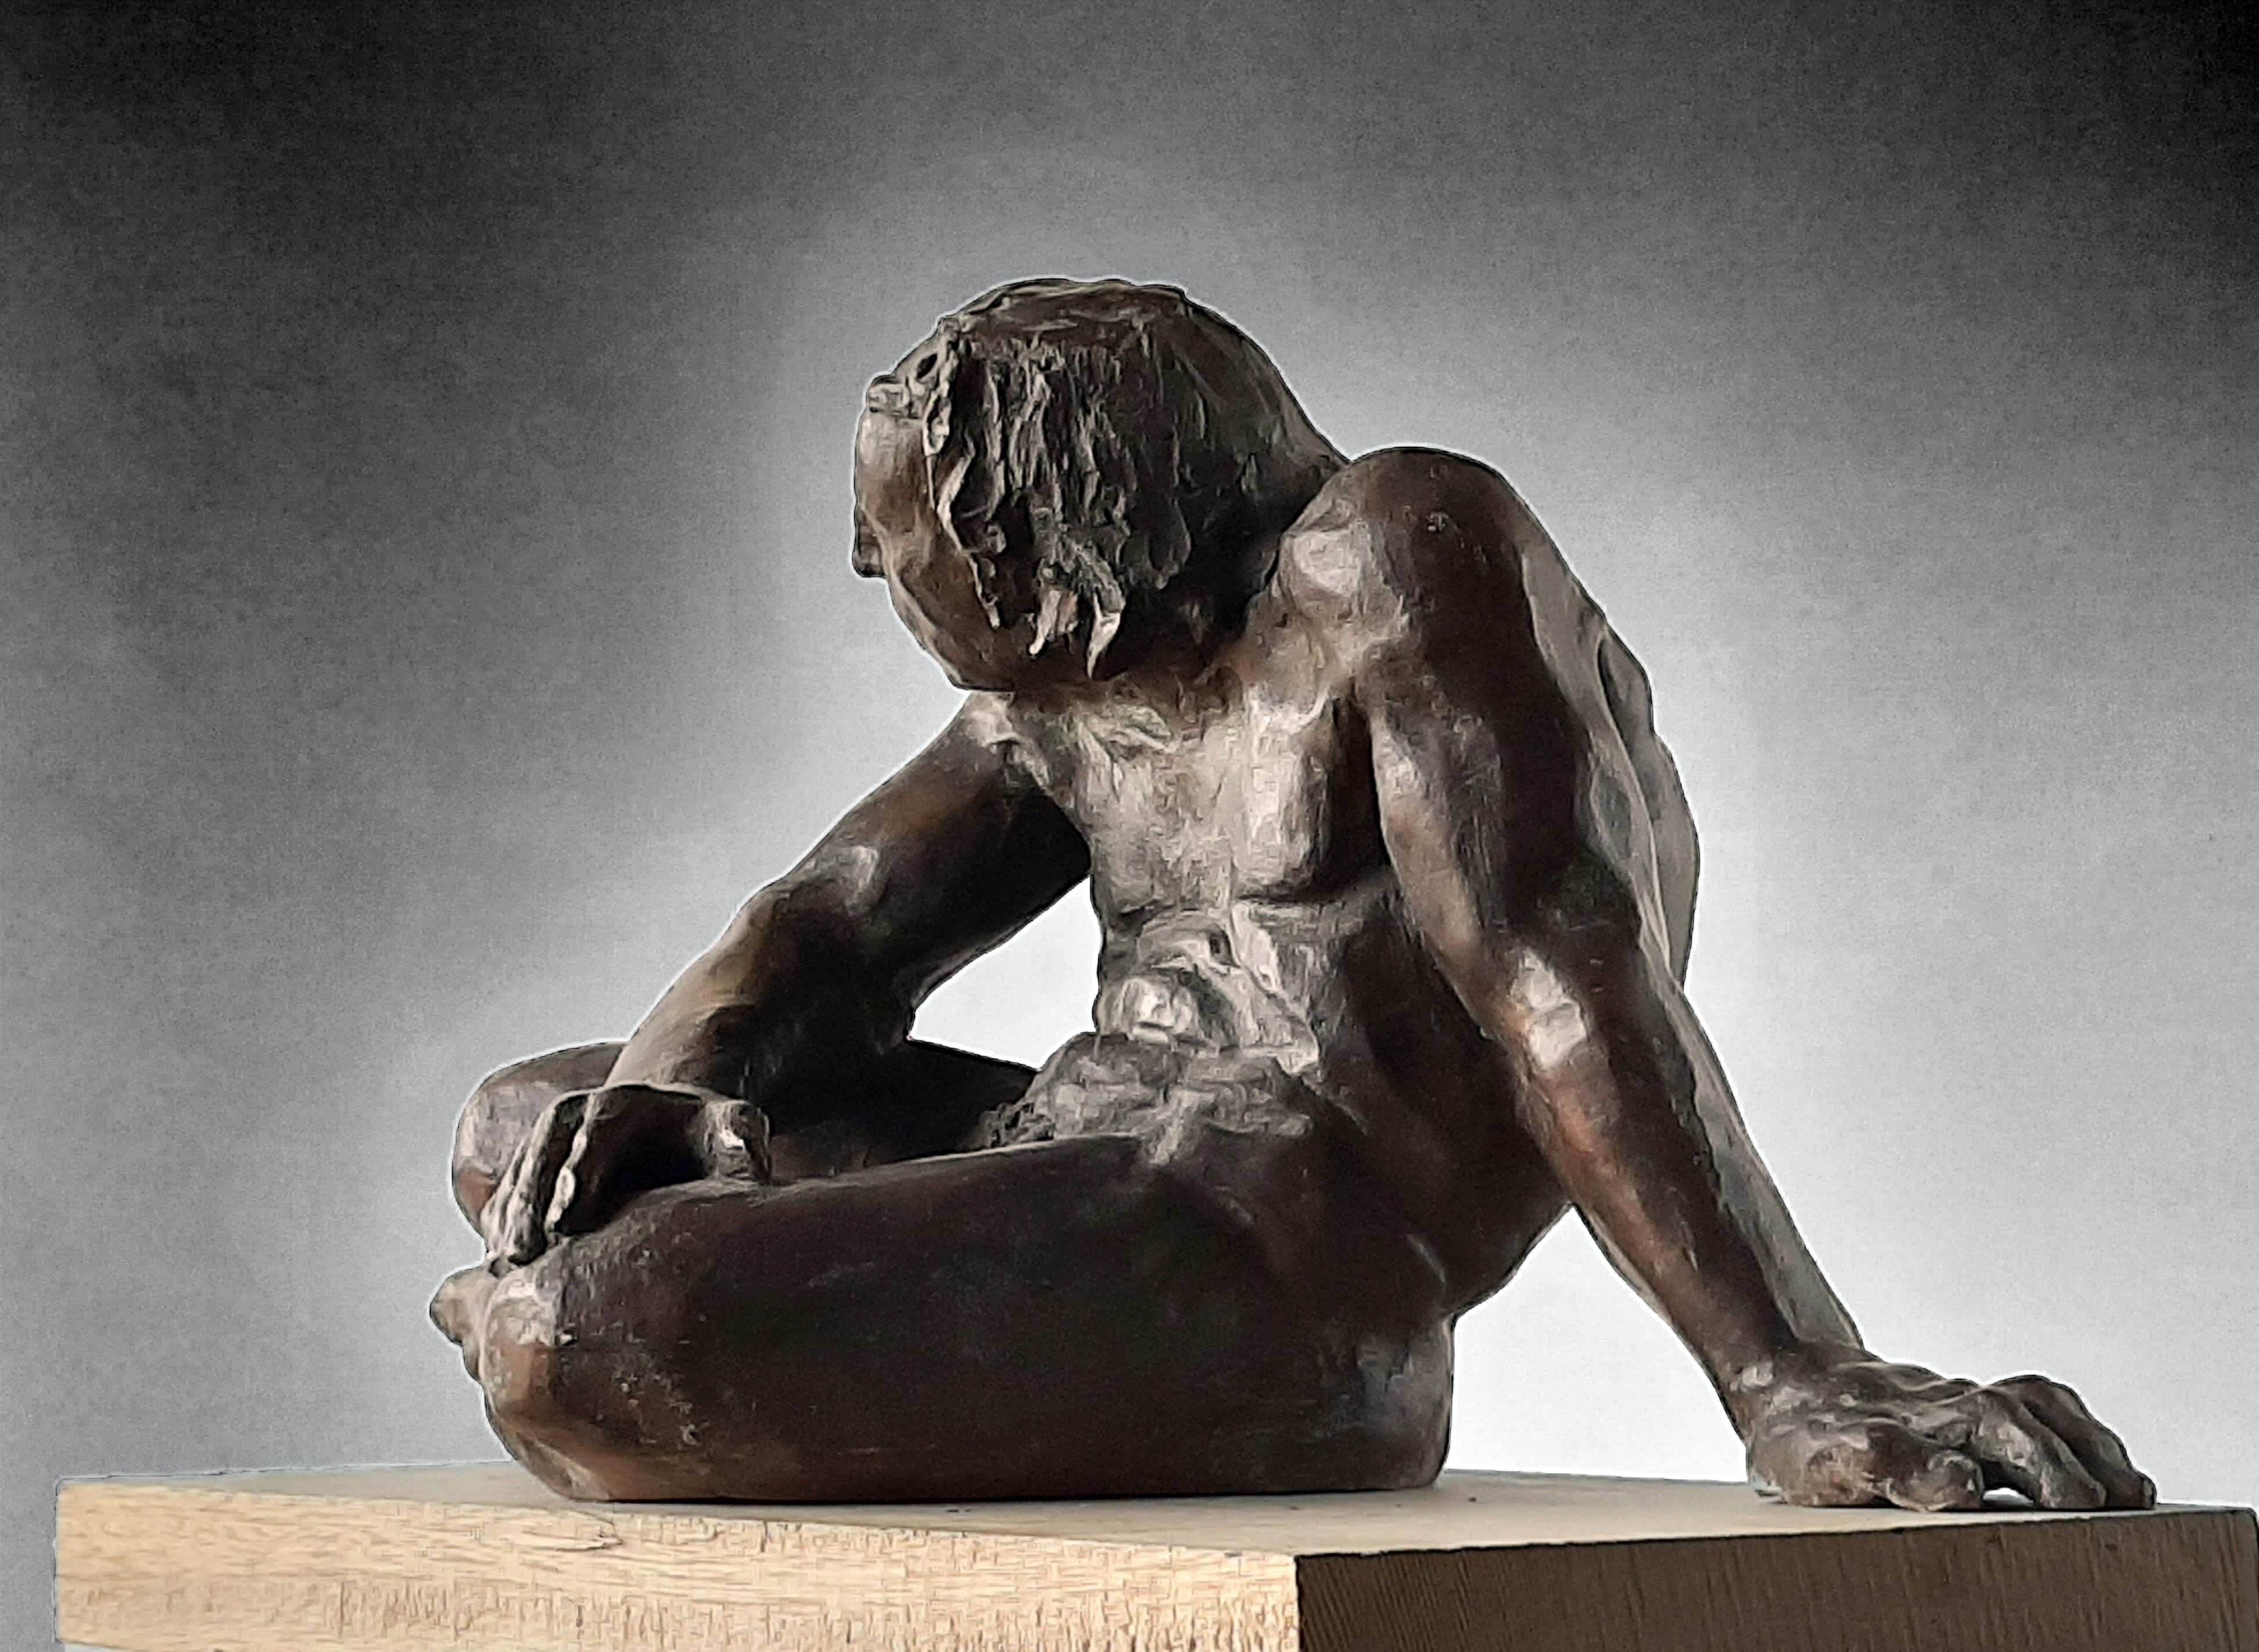 Sculpture de l'artiste espagnol AMANCIO GONZALEZ
le bronze.
Série limitée à 7 exemplaires.
Fantastique pièce d'art représentant la sculpture espagnole
AMANCIO Gonzalez ( Leon 1965 )

Amancio González est un sculpteur de Léon et un artiste de